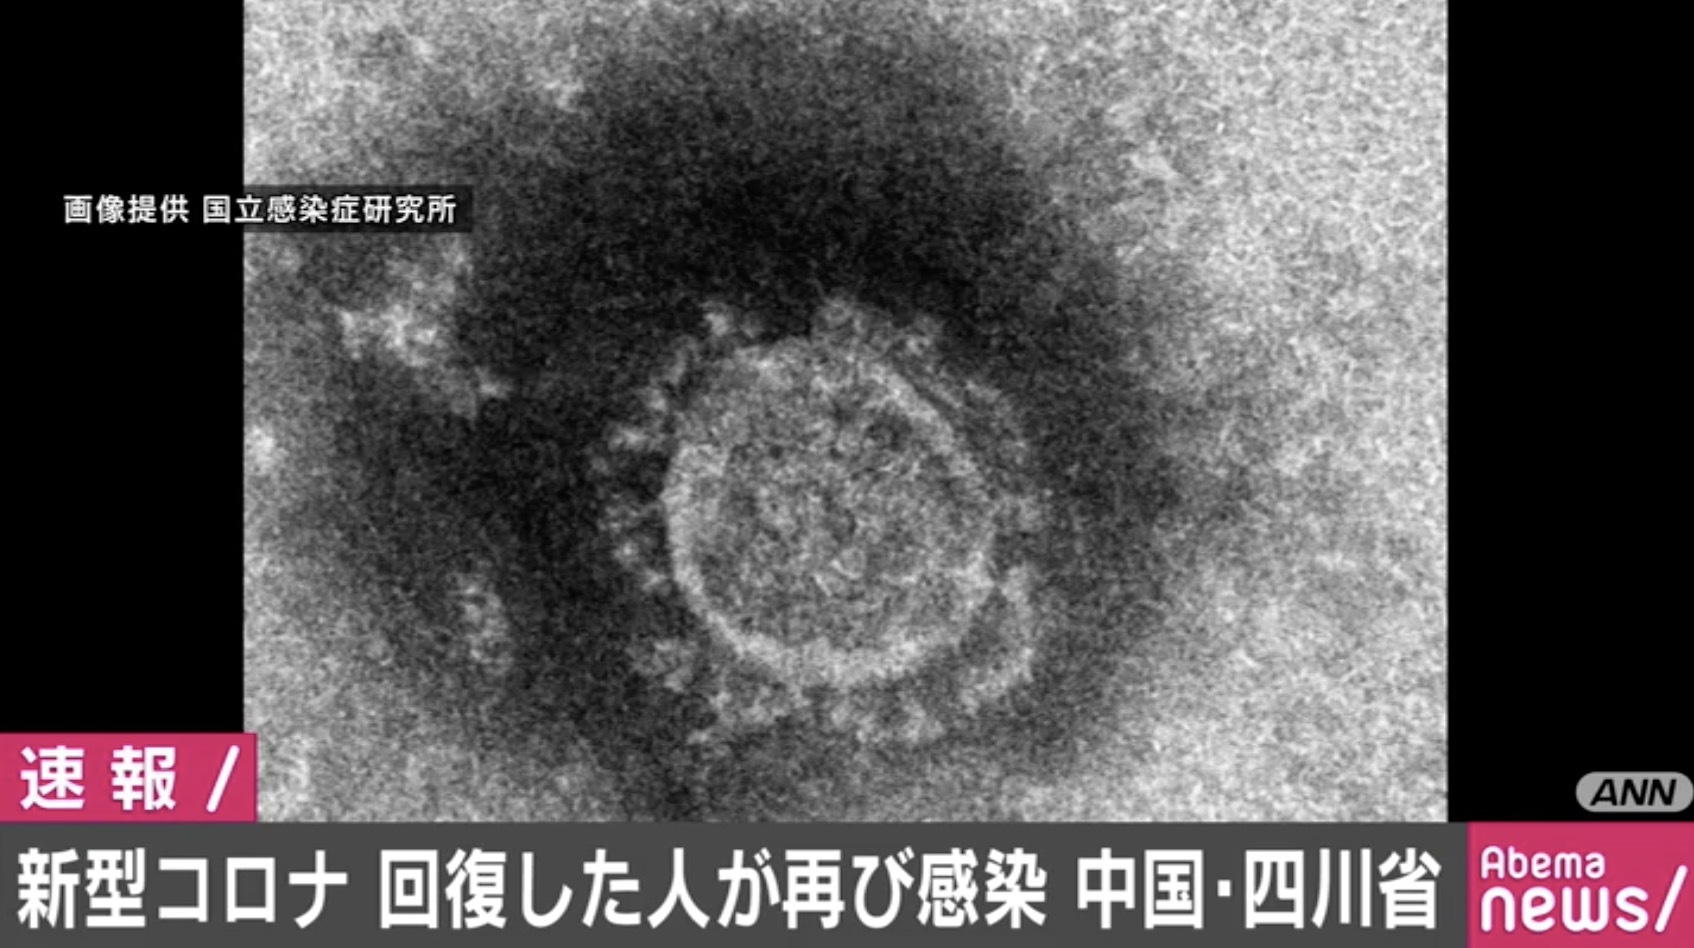 新型コロナウイルスの感染から回復した人が再び感染 中国 | AbemaTIMES